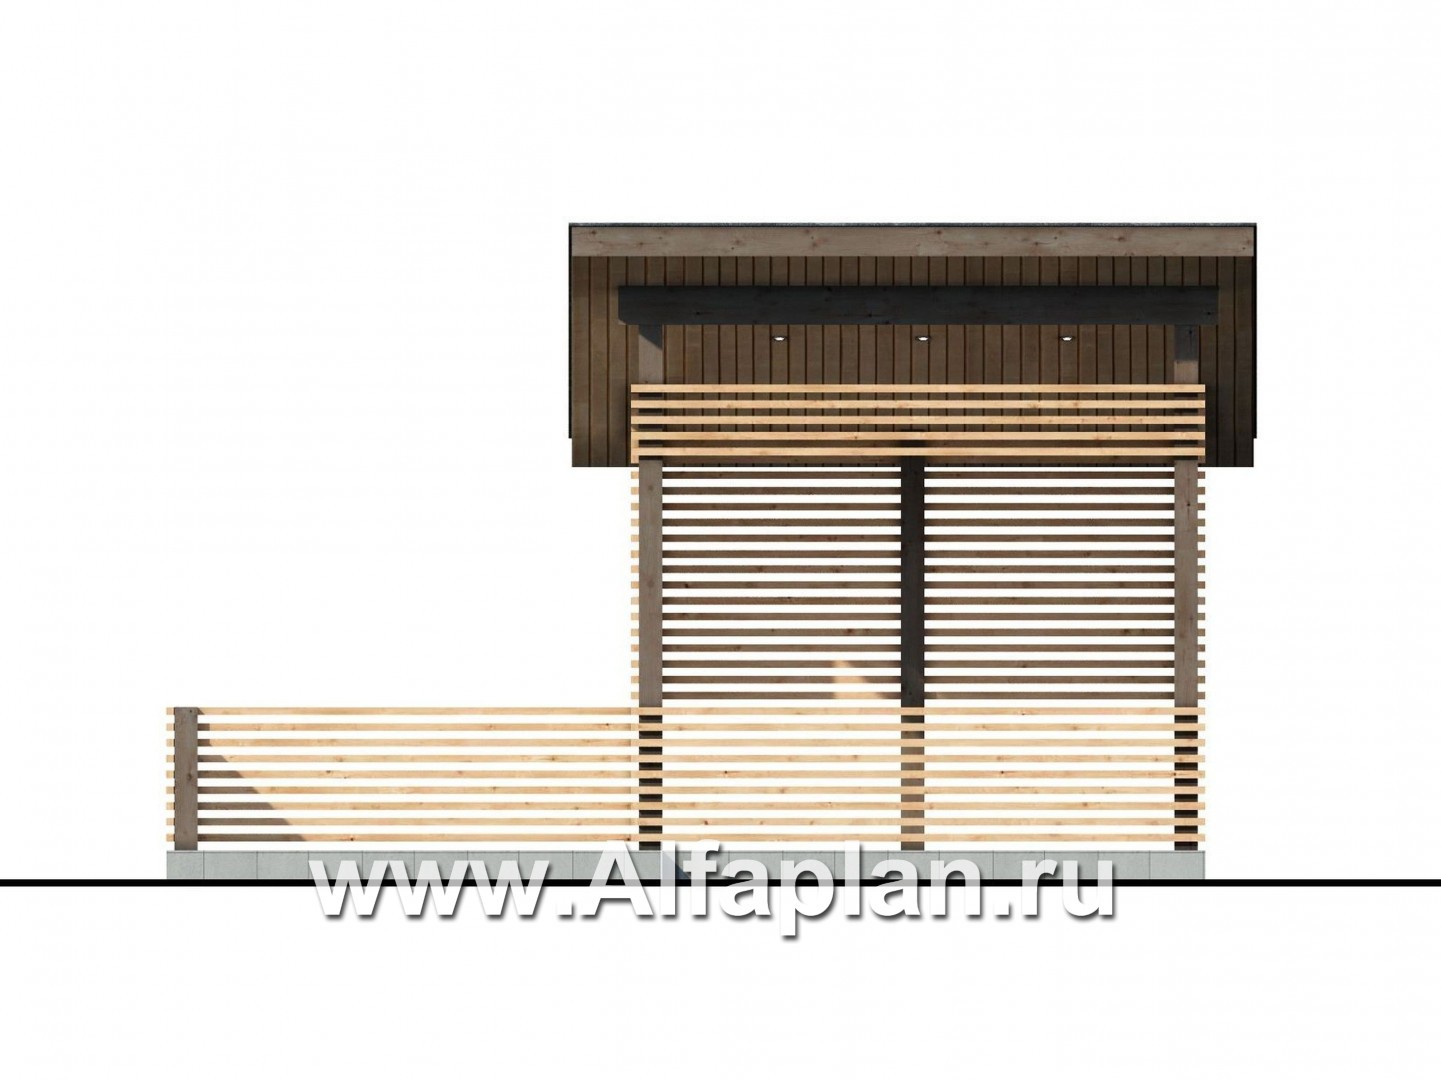 Проекты домов Альфаплан - Летняя кухня, современная элегантная беседка - изображение фасада №1